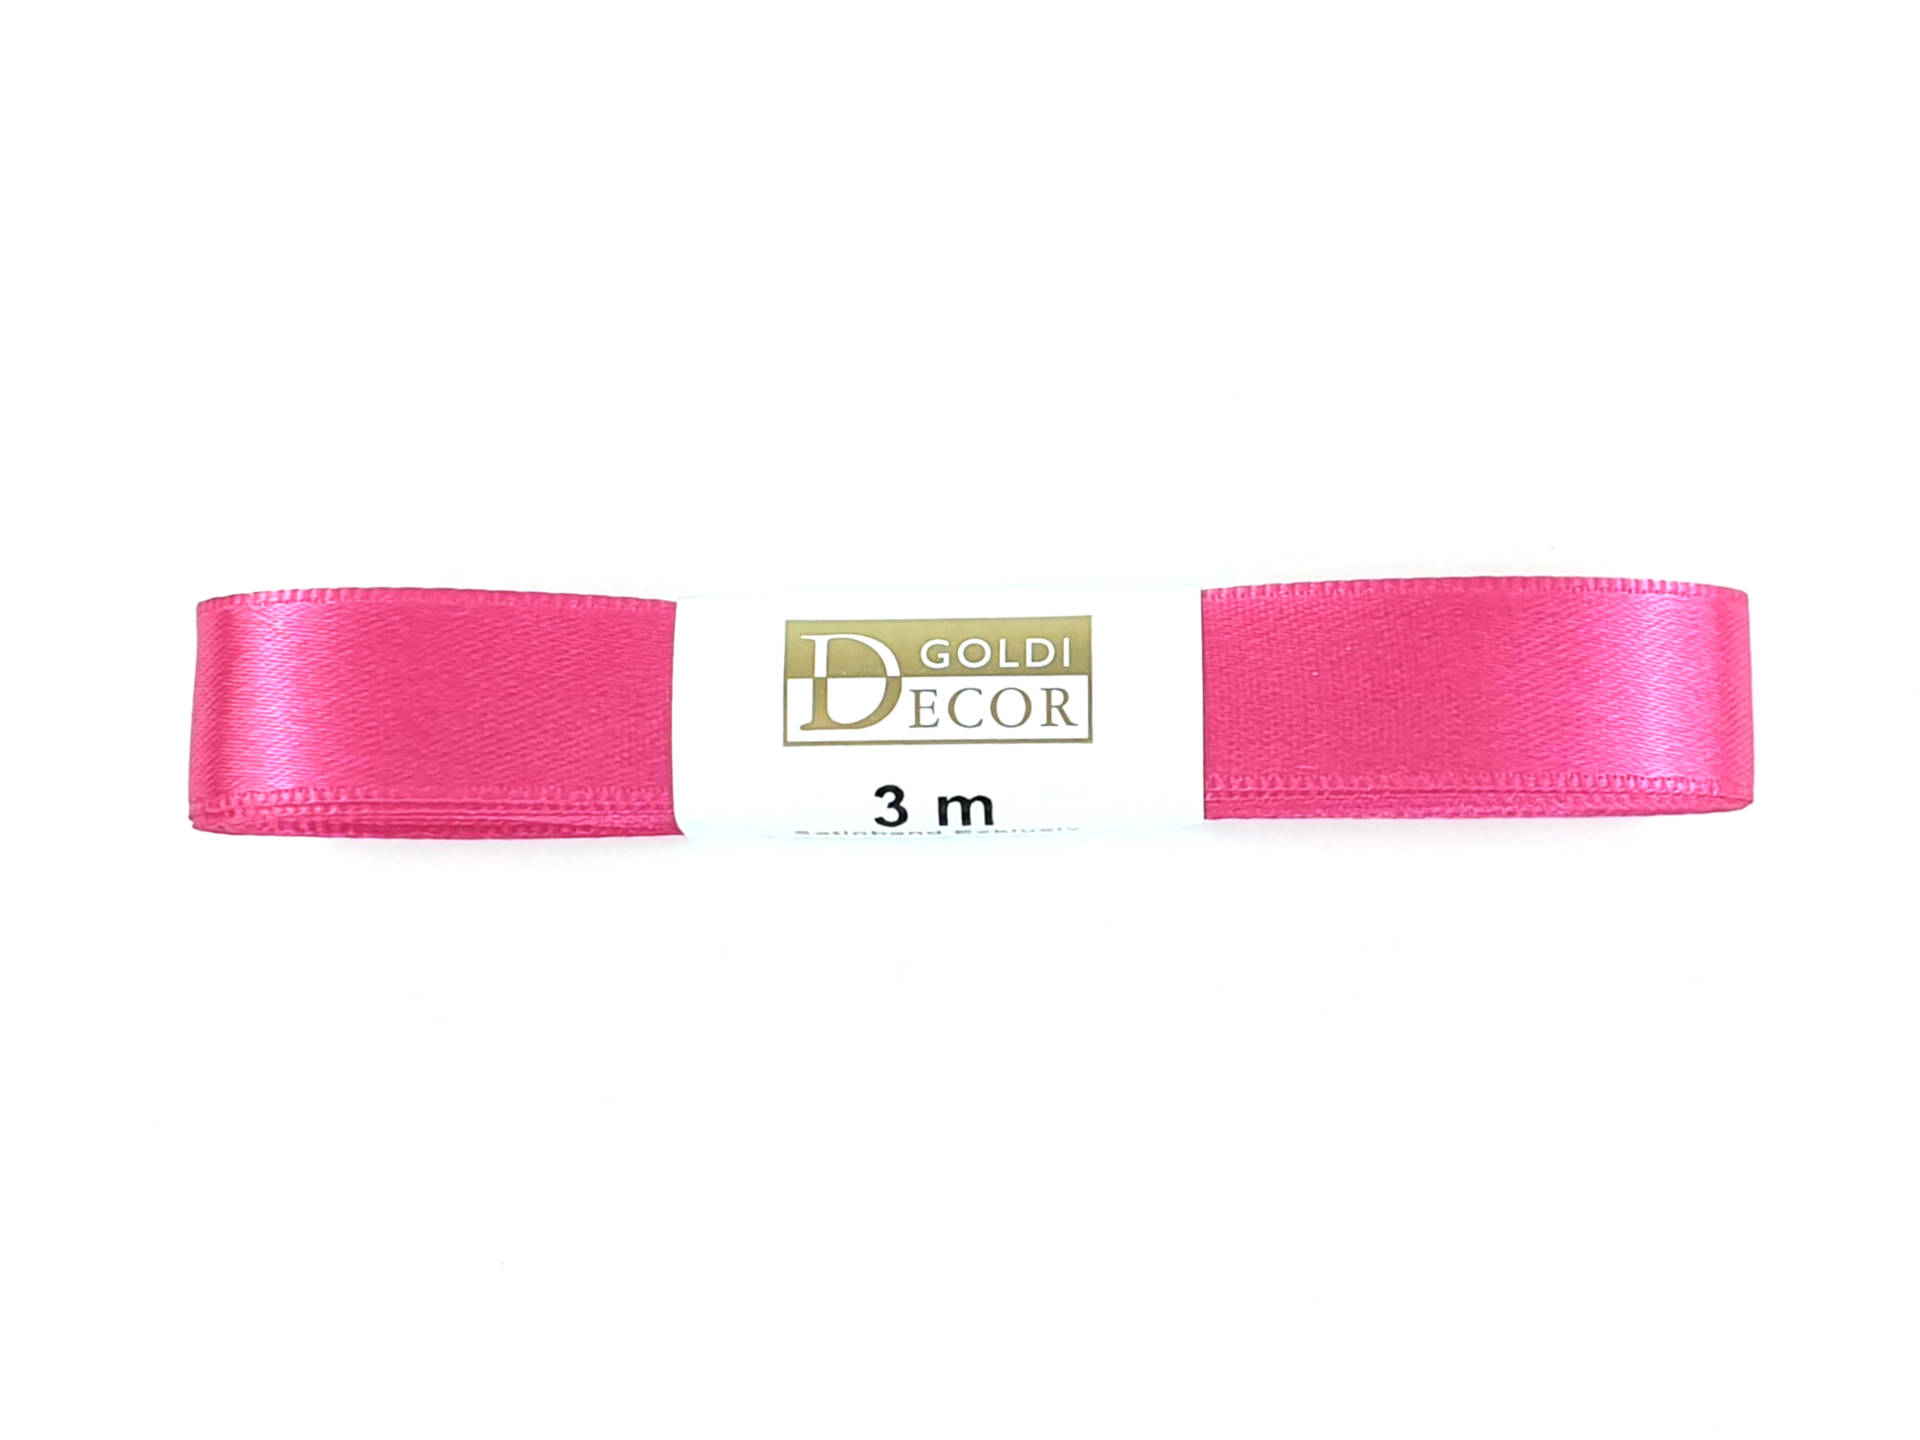 Premium-Satinband, pink, 15 mm breit, 3 m Strängchen - satinbaender, dauersortiment, satinband, premium-qualitat